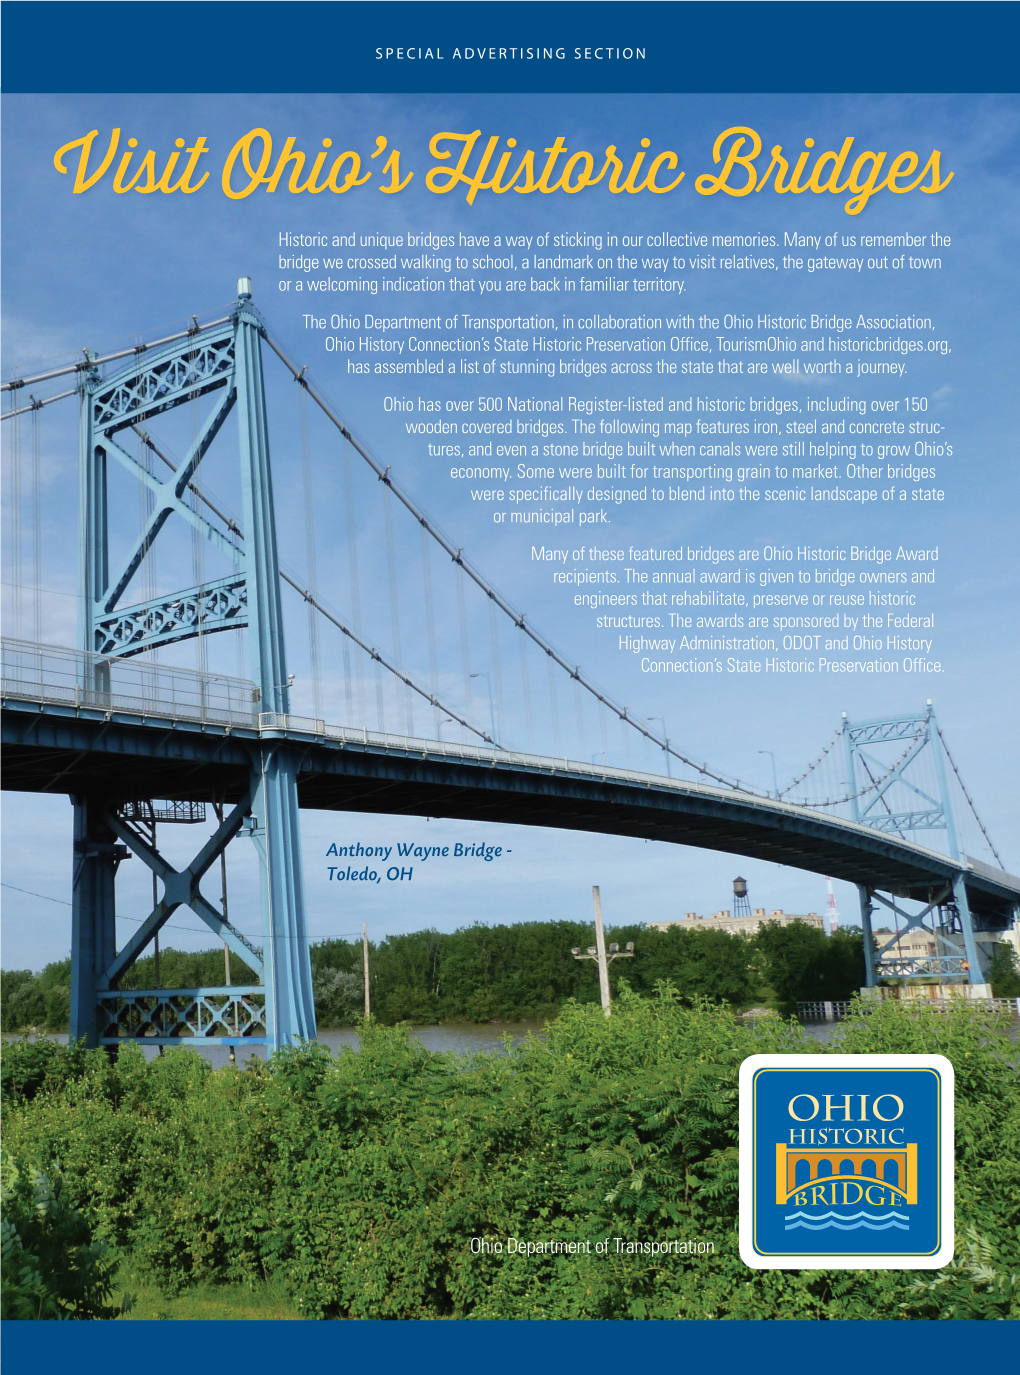 Visit Ohio's Historic Bridges